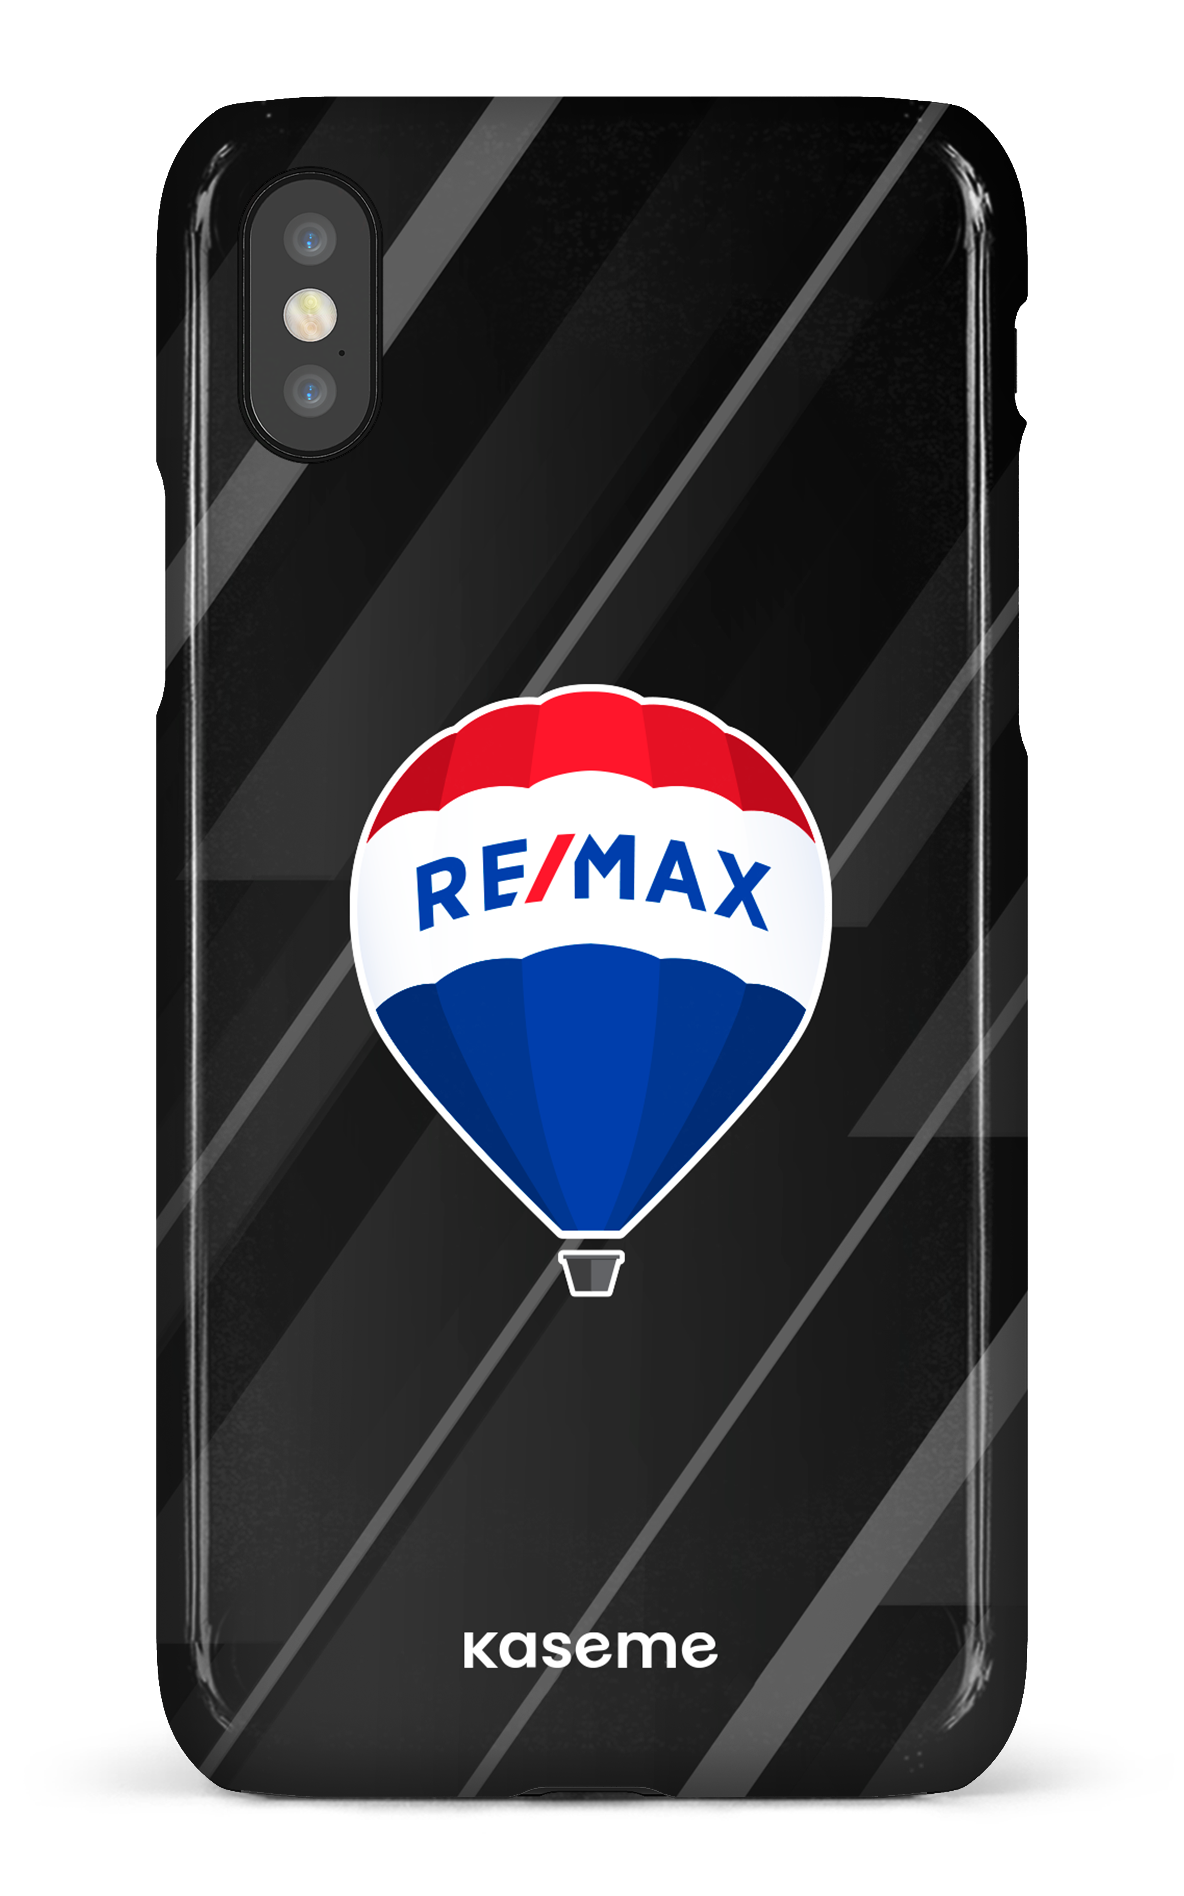 Remax Noir - iPhone X/Xs